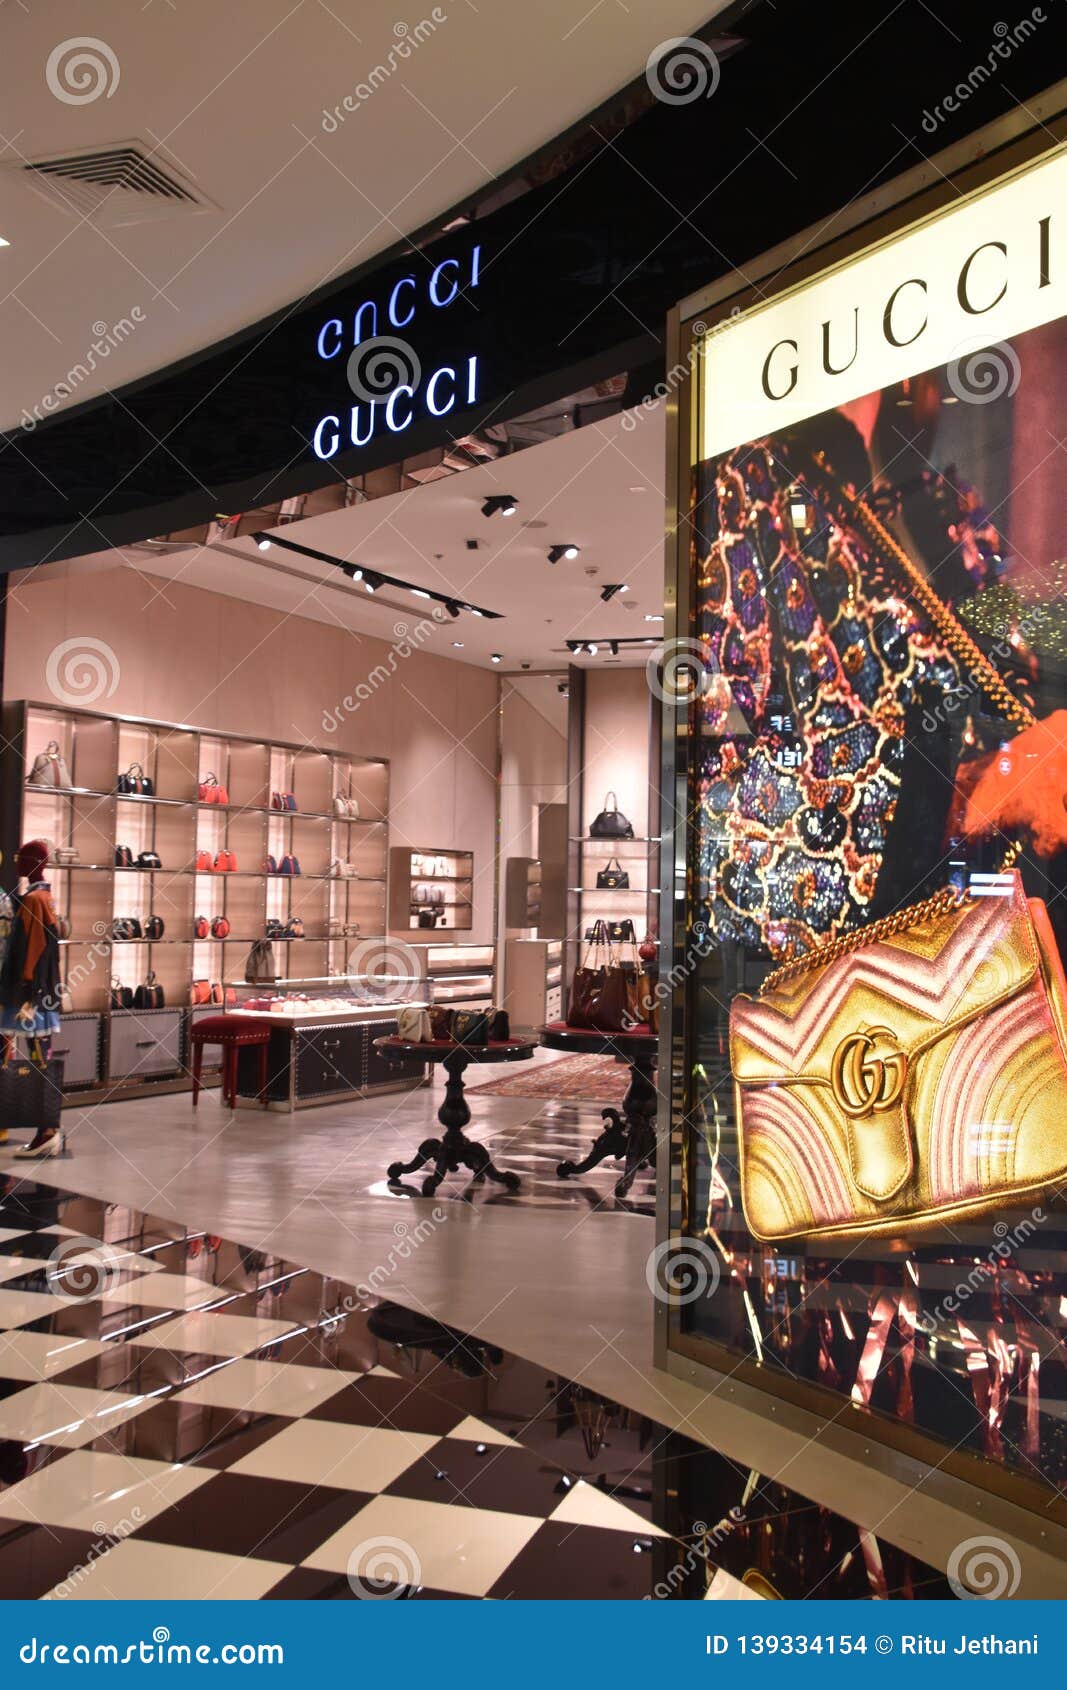 Gucci Store at Dubai Mall in Dubai, UAE Editorial Stock Image - Image garretts, biggest: 139334154